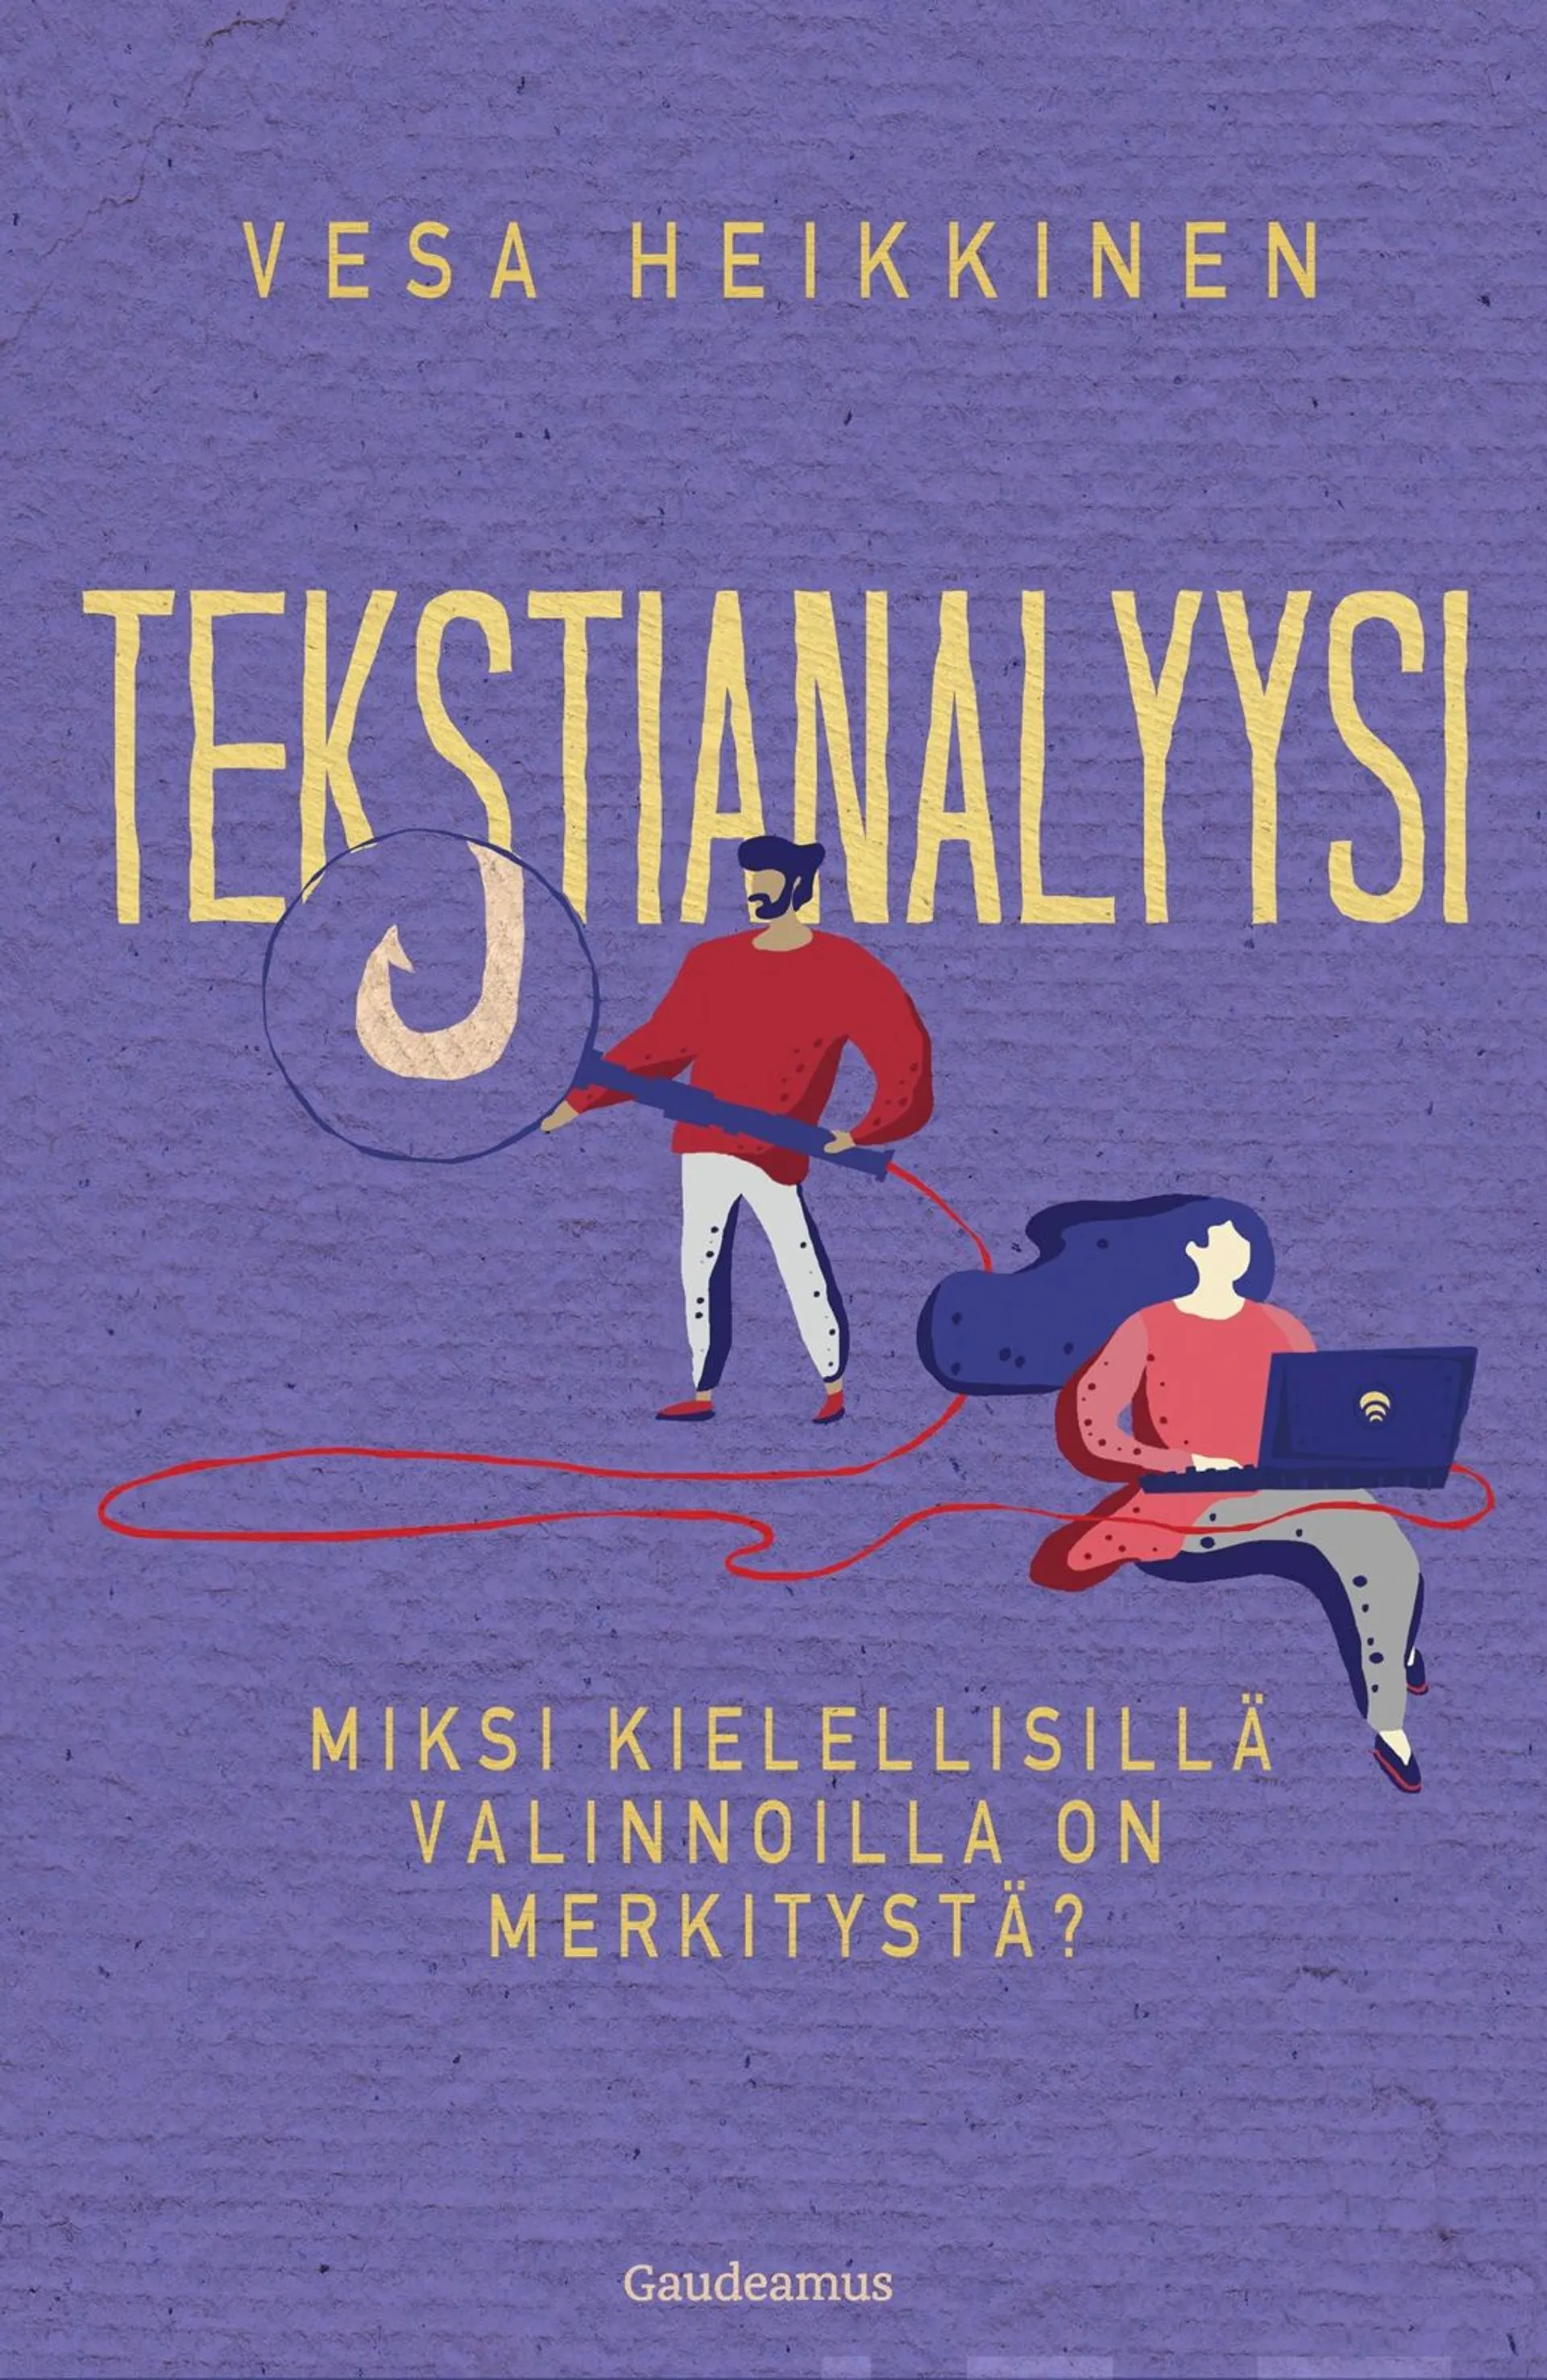 Heikkinen, Tekstianalyysi